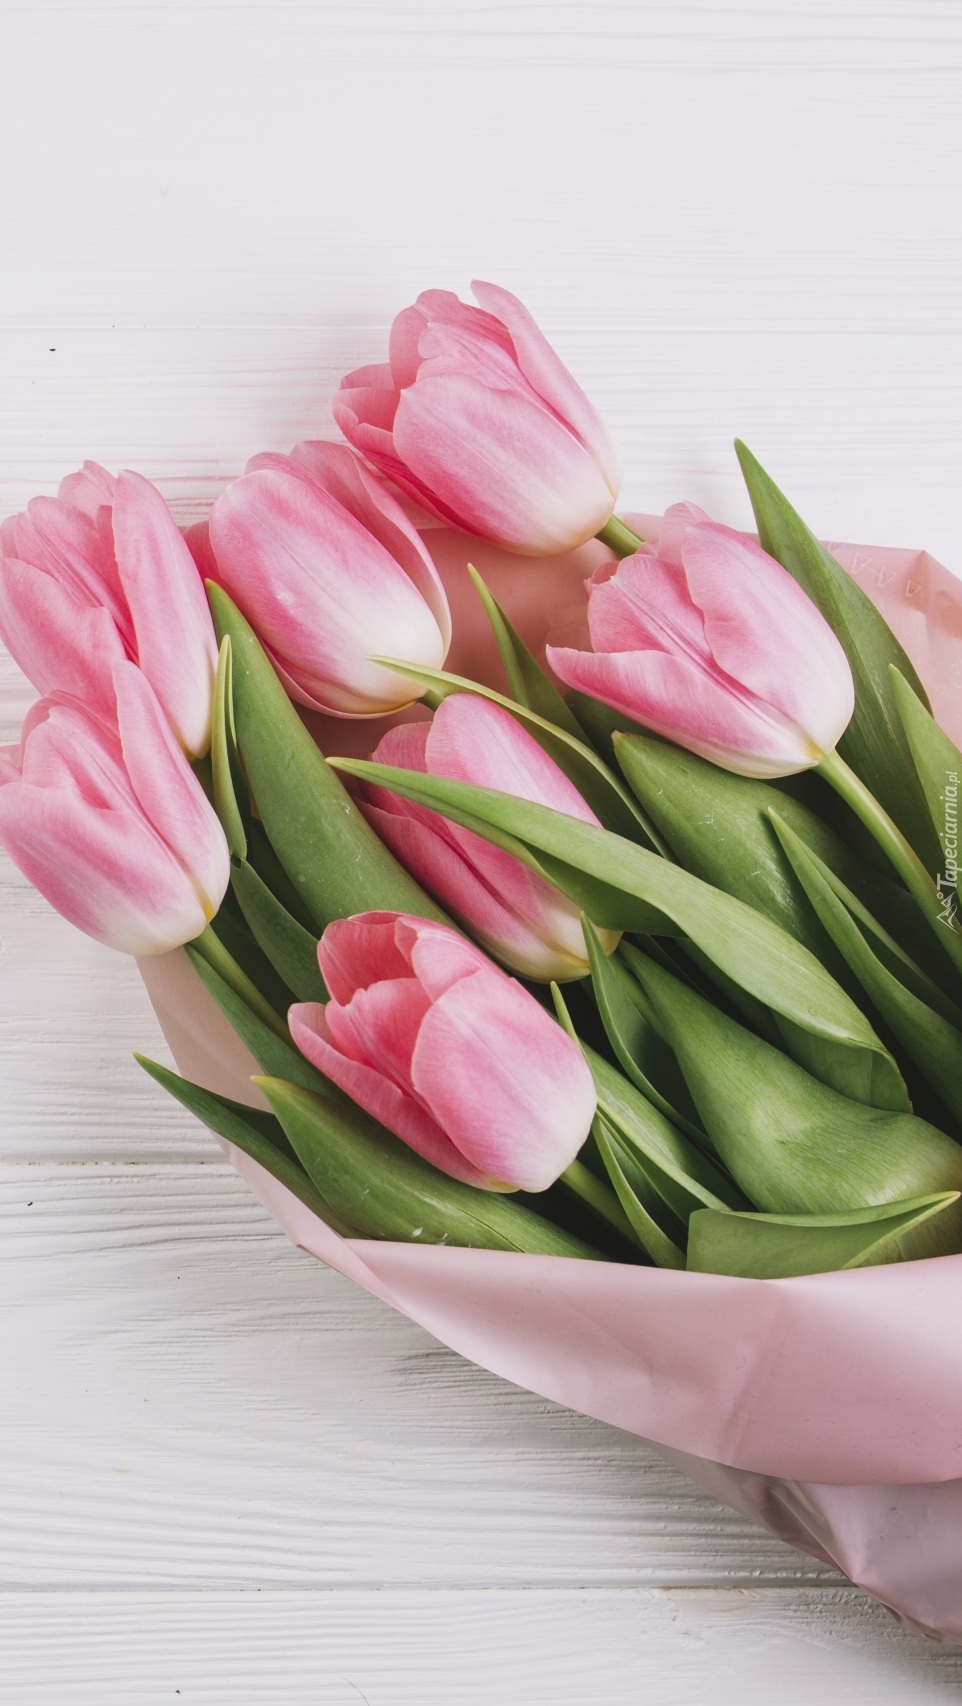 Bukiet różowych tulipanów